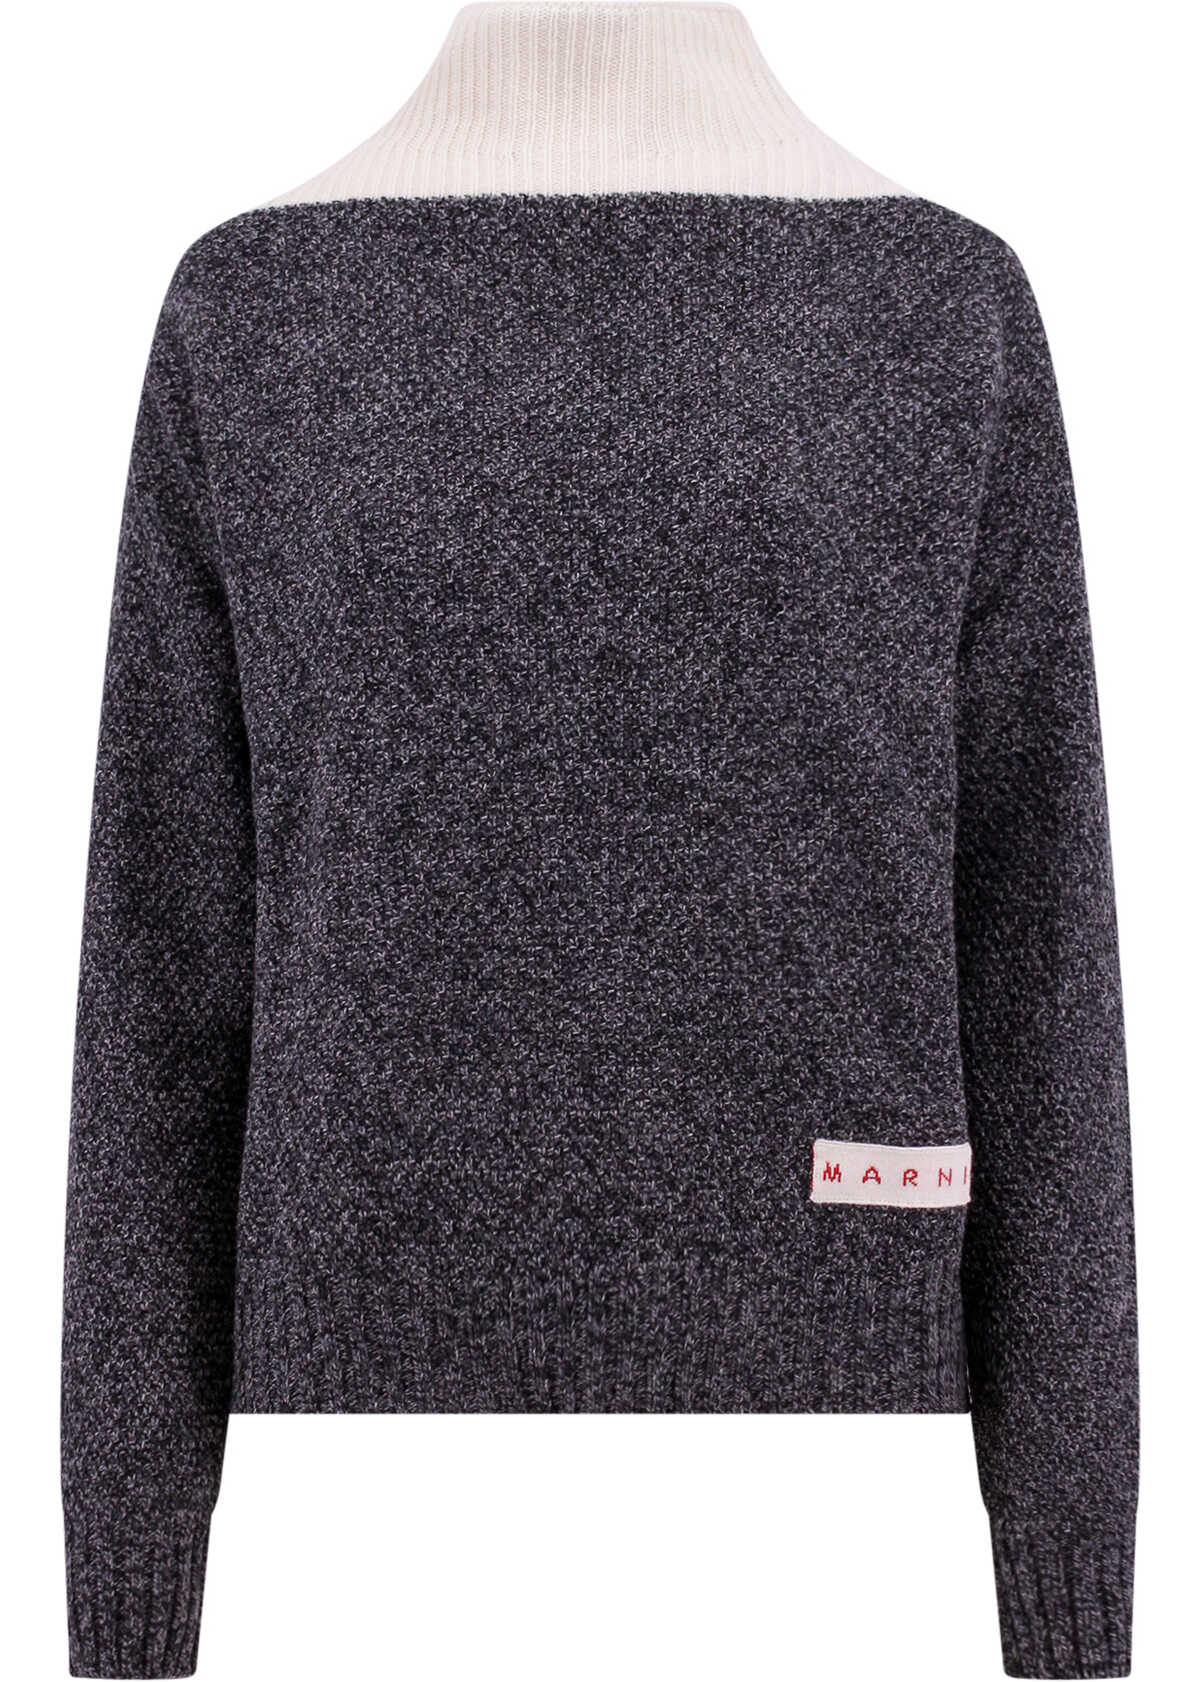 Marni Sweater Grey